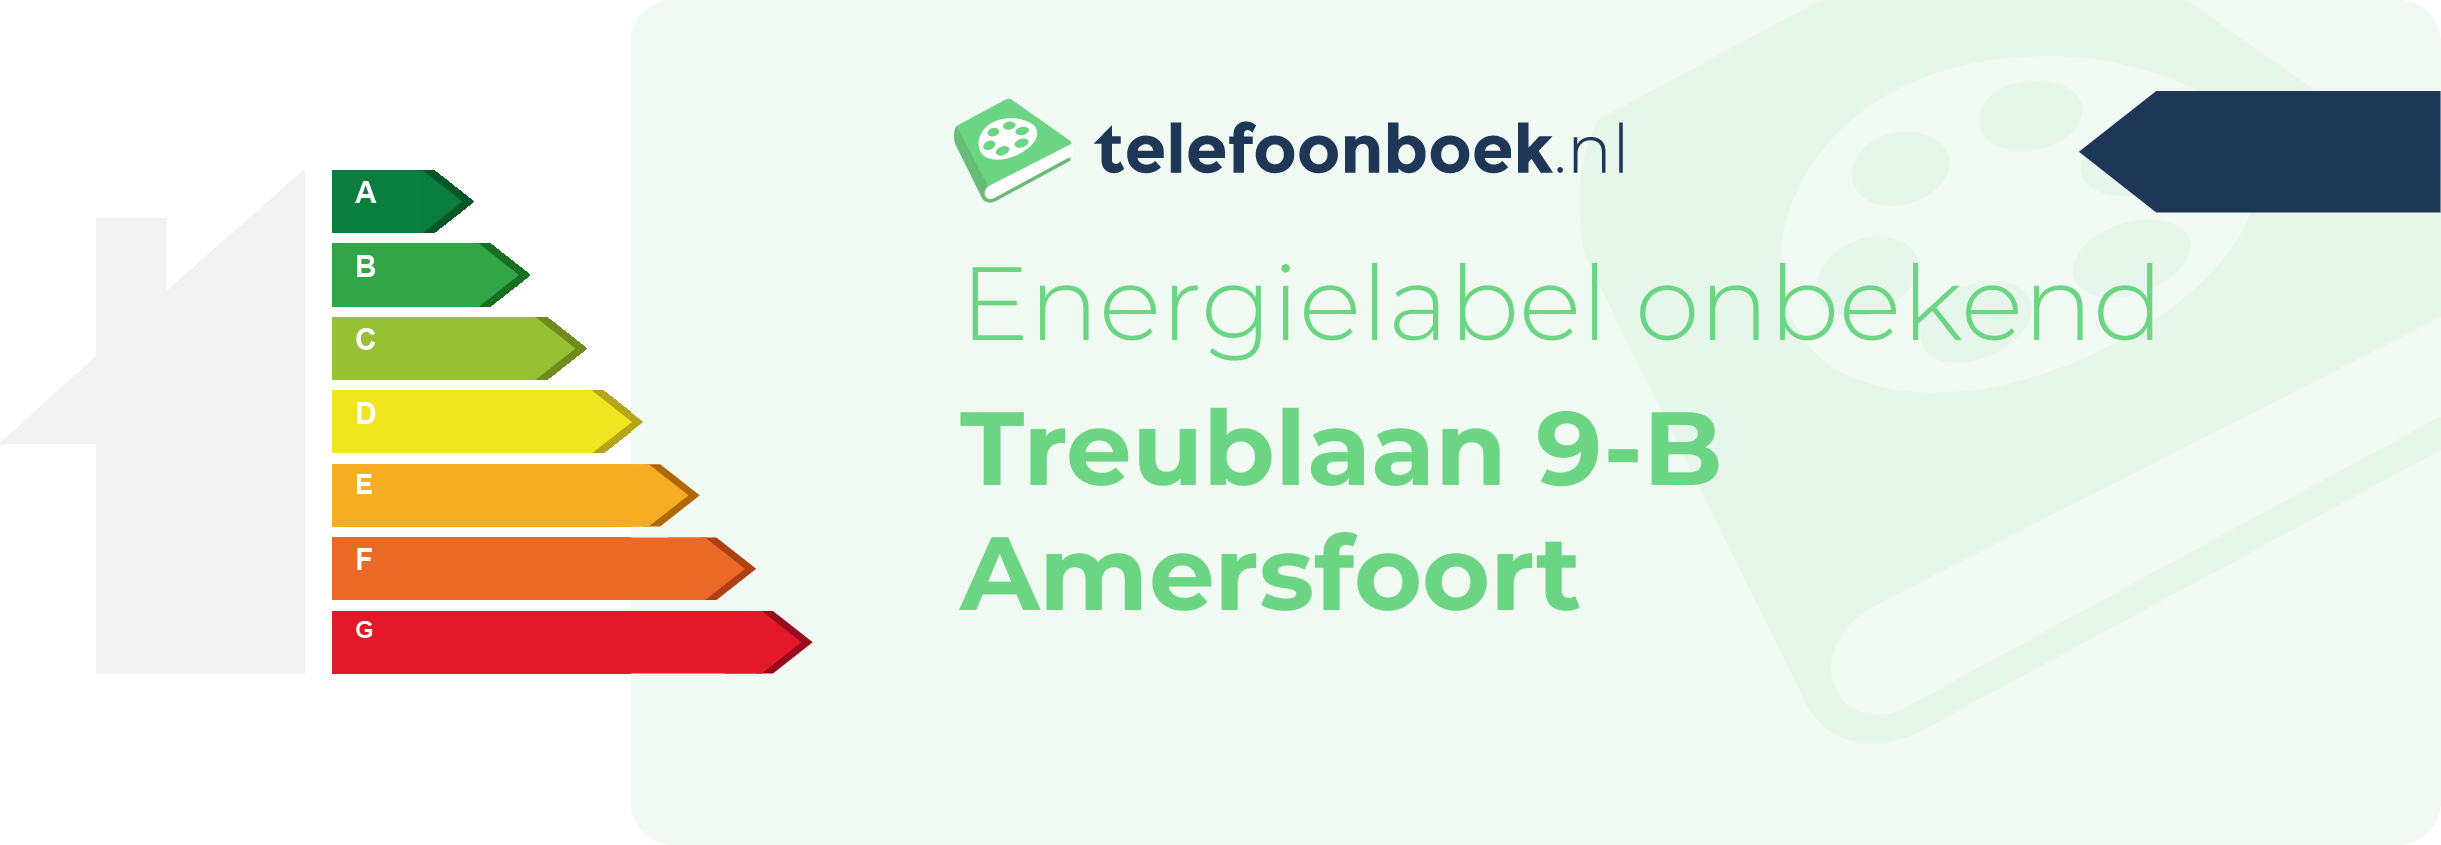 Energielabel Treublaan 9-B Amersfoort